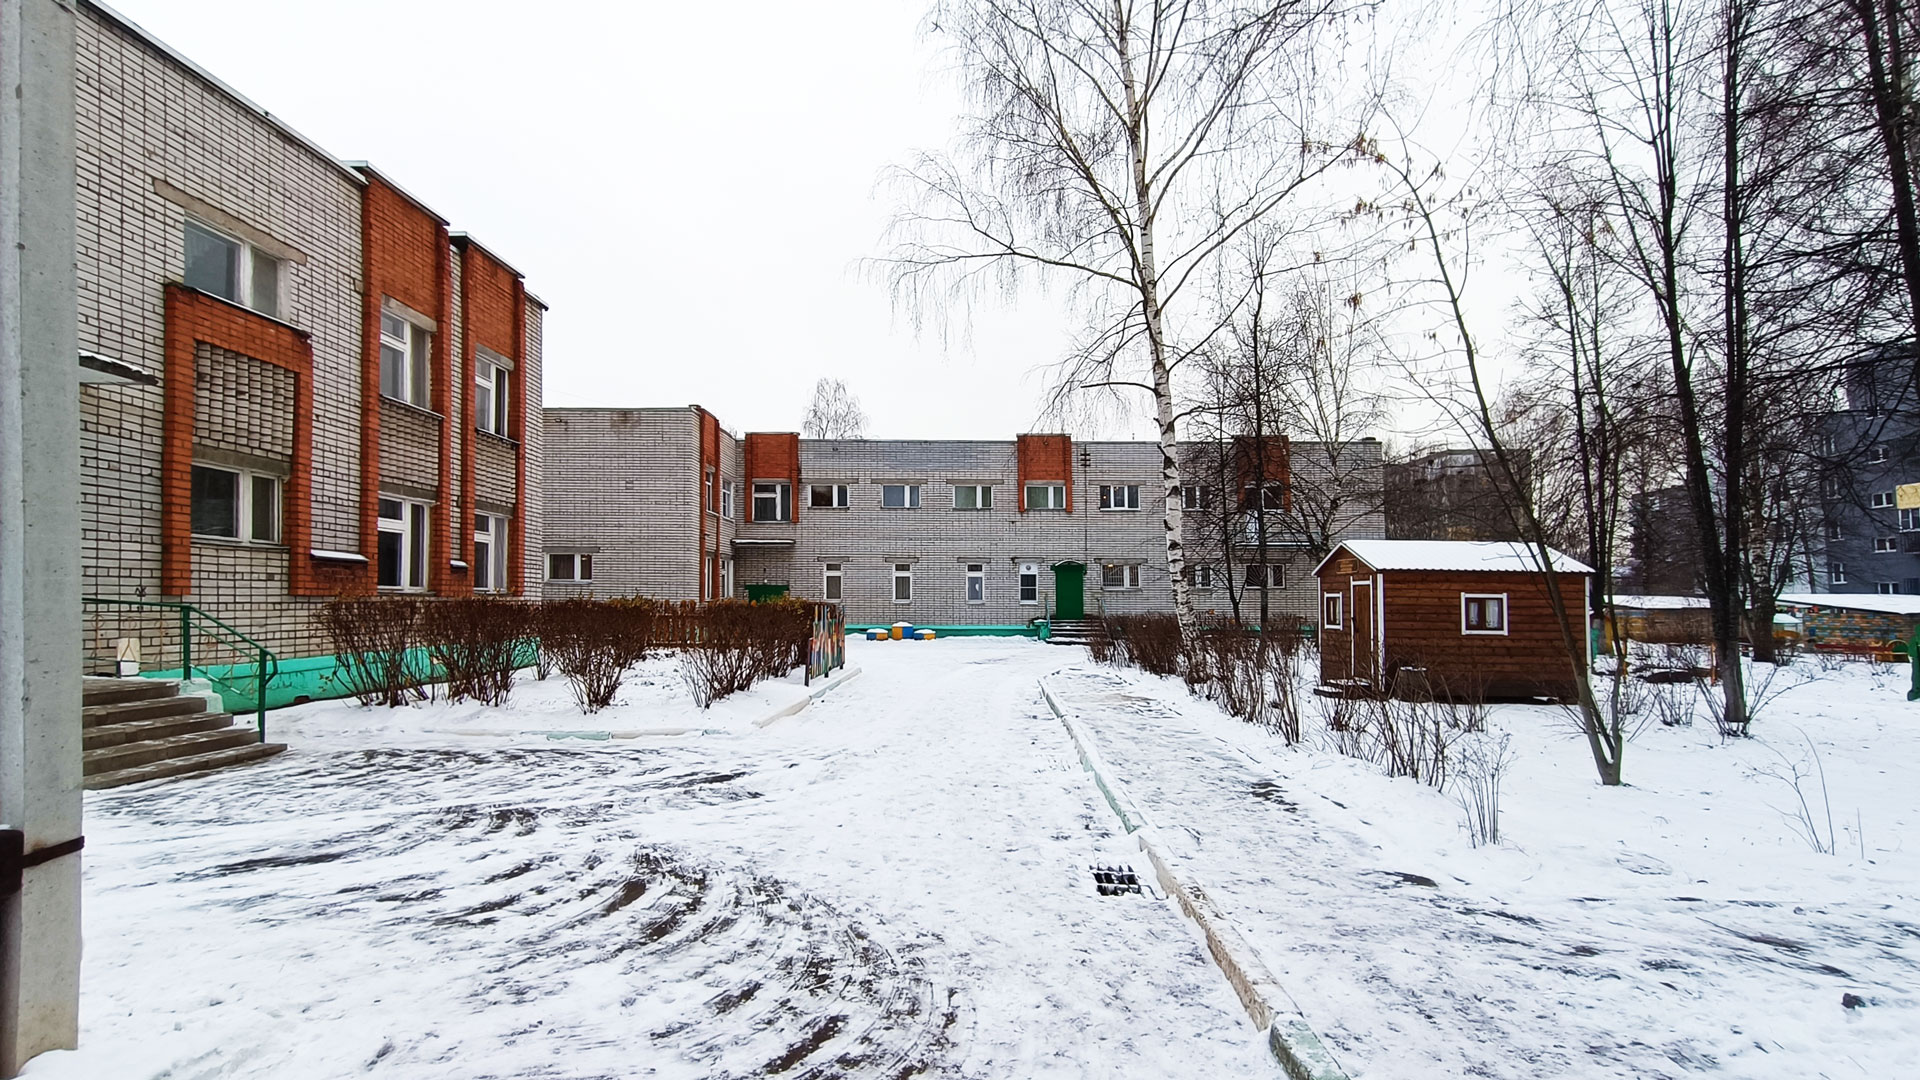 Детский сад 240 Ярославль: общий вид здания.